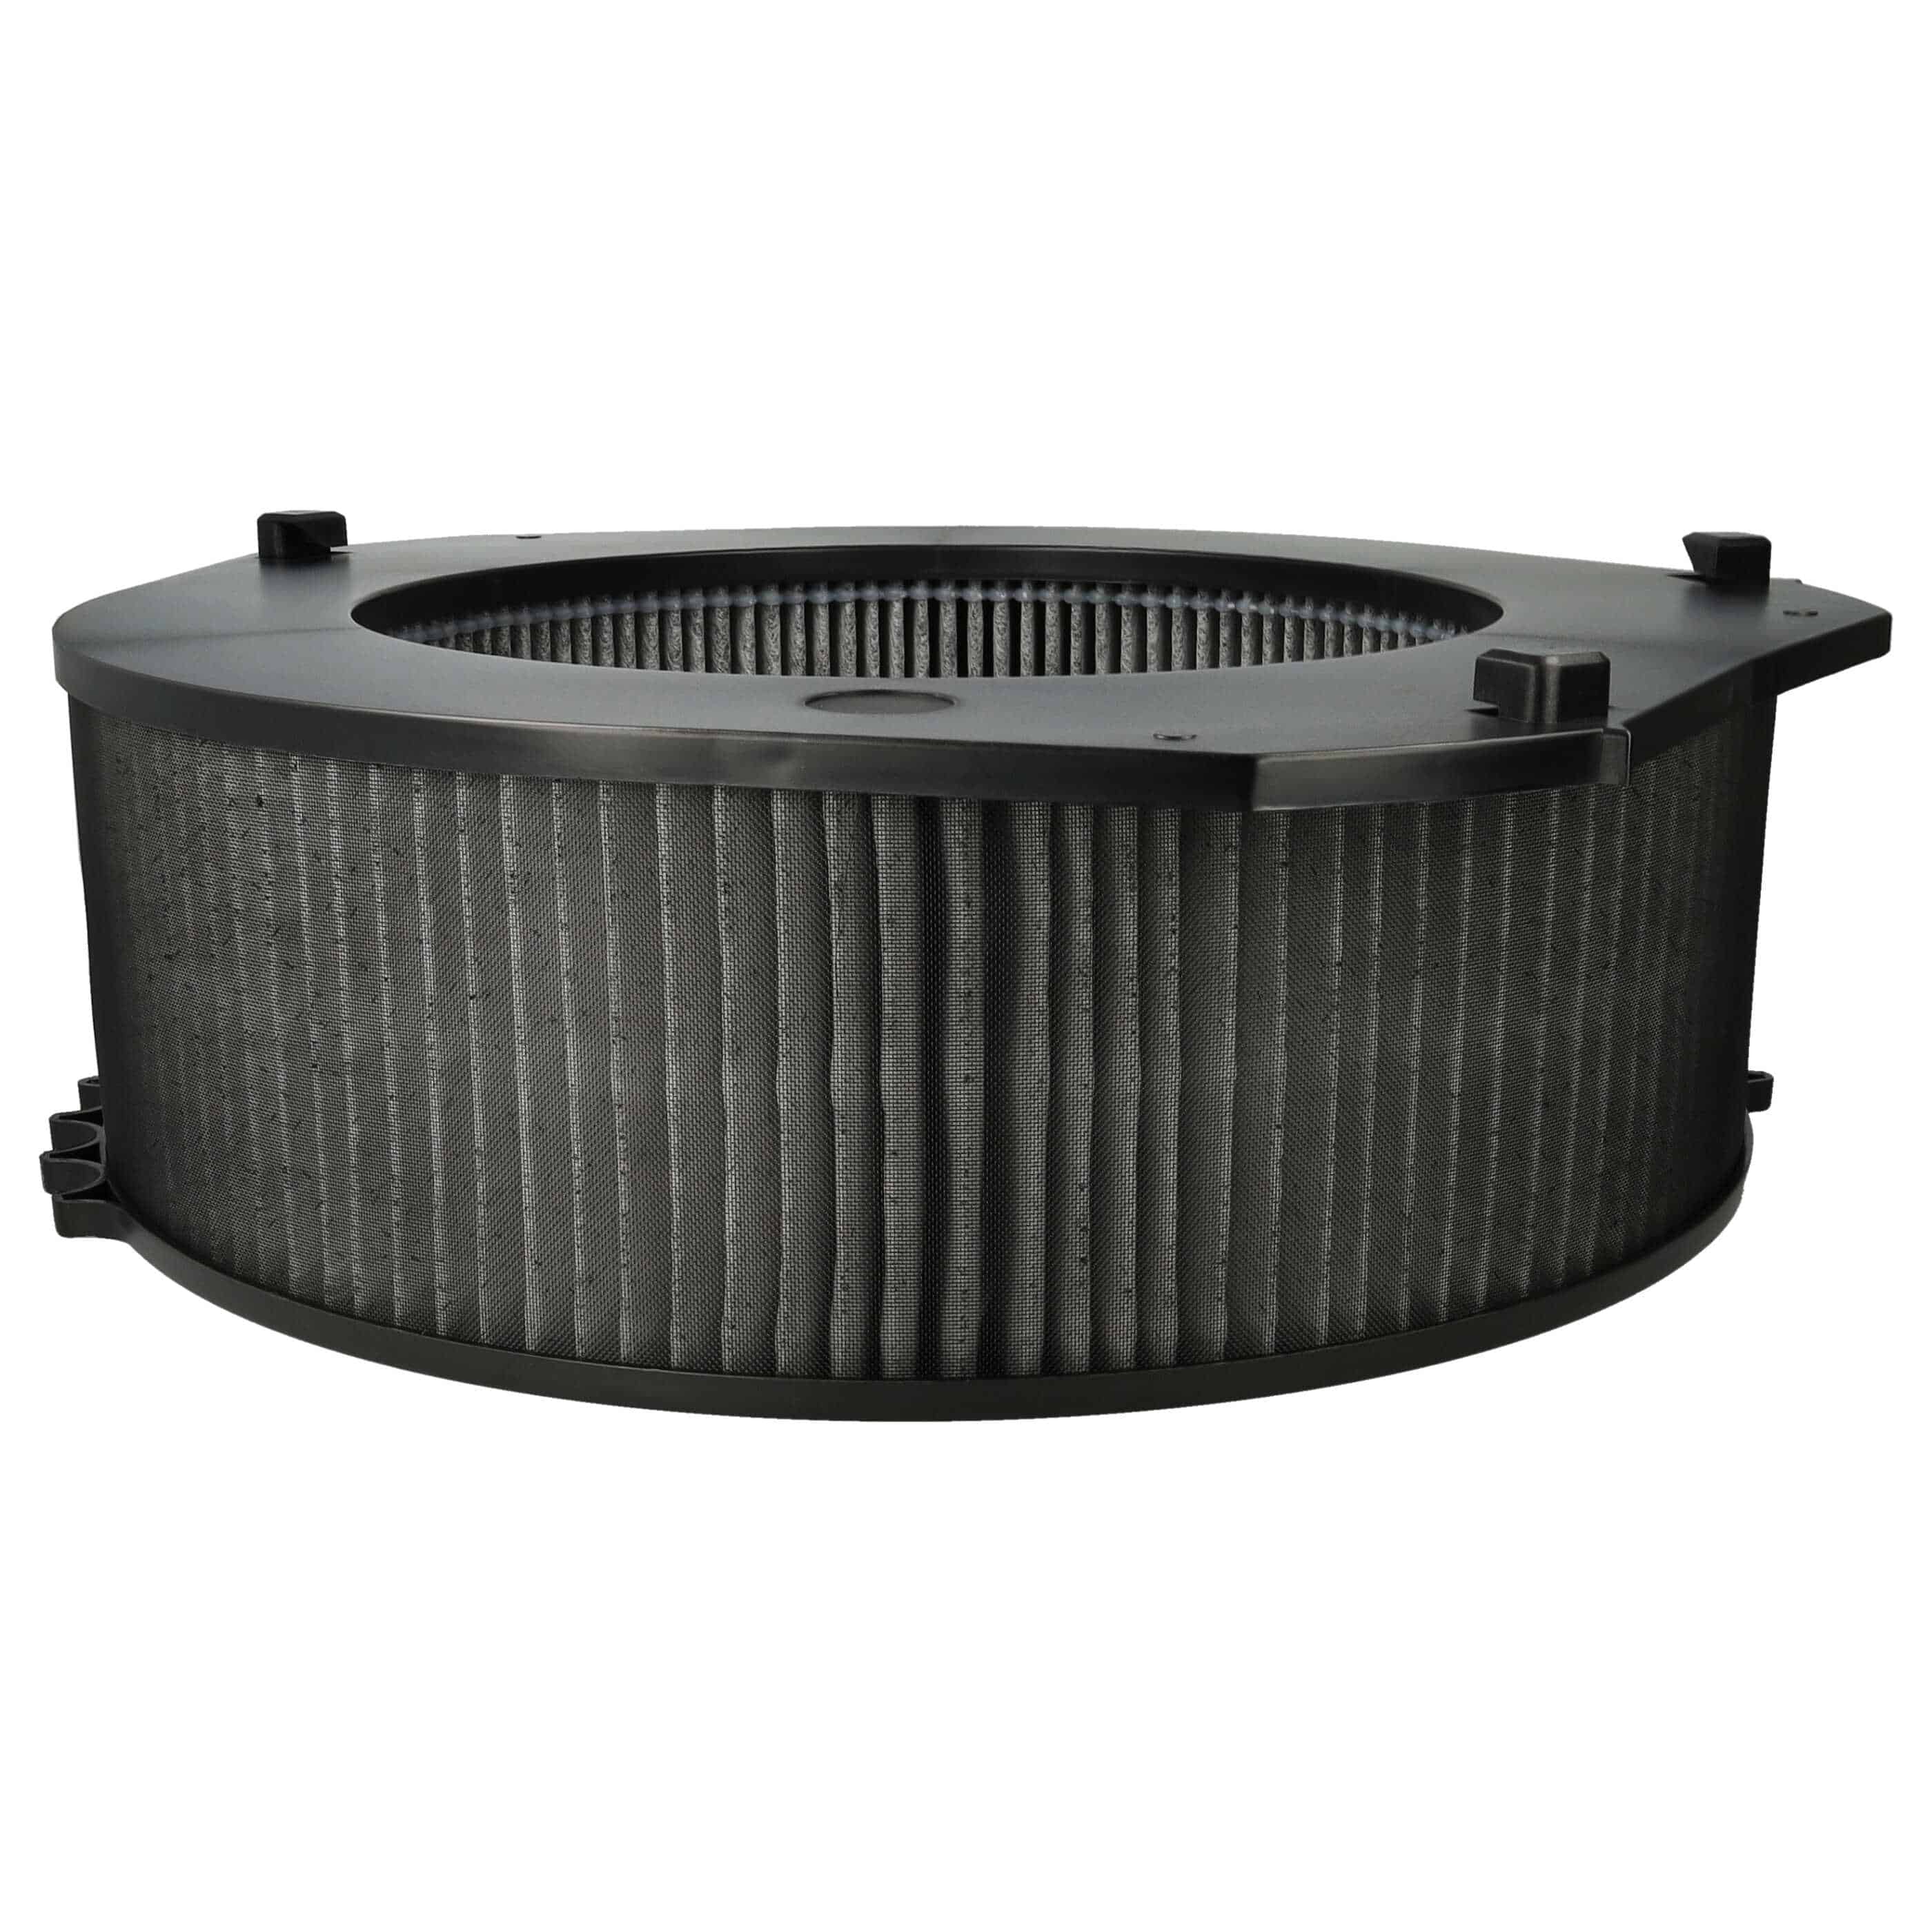 Luftreiniger-Filter (PM10) als Ersatz für Ideal 8741099 - Kombi-Fein-Vorfilter+HEPA+Aktivkohle